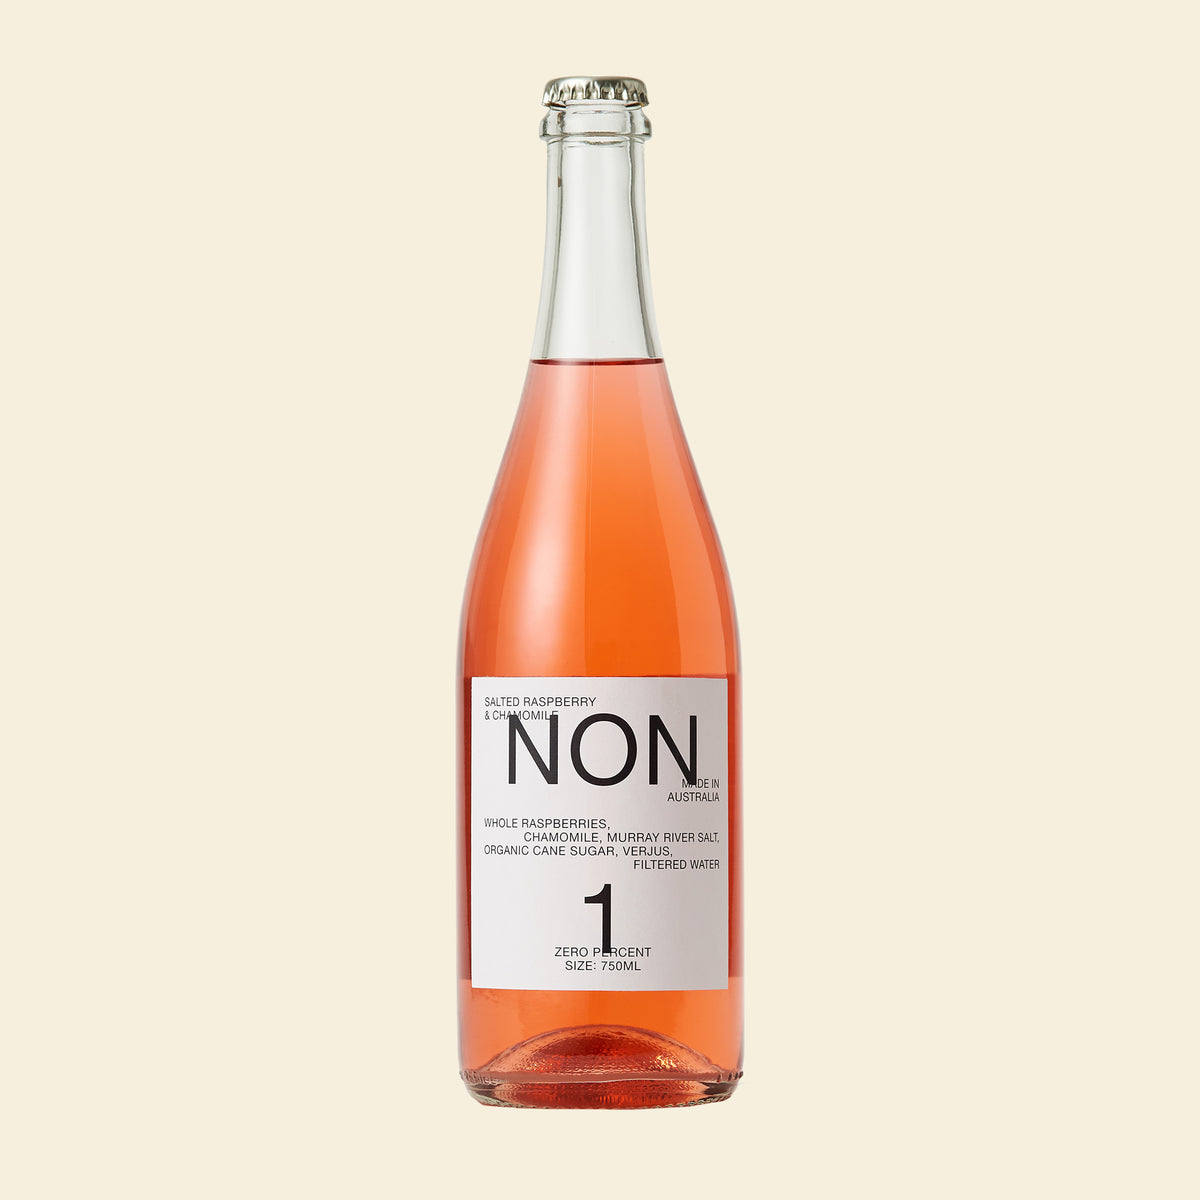 Non No.1 Nonalcoholic Wine